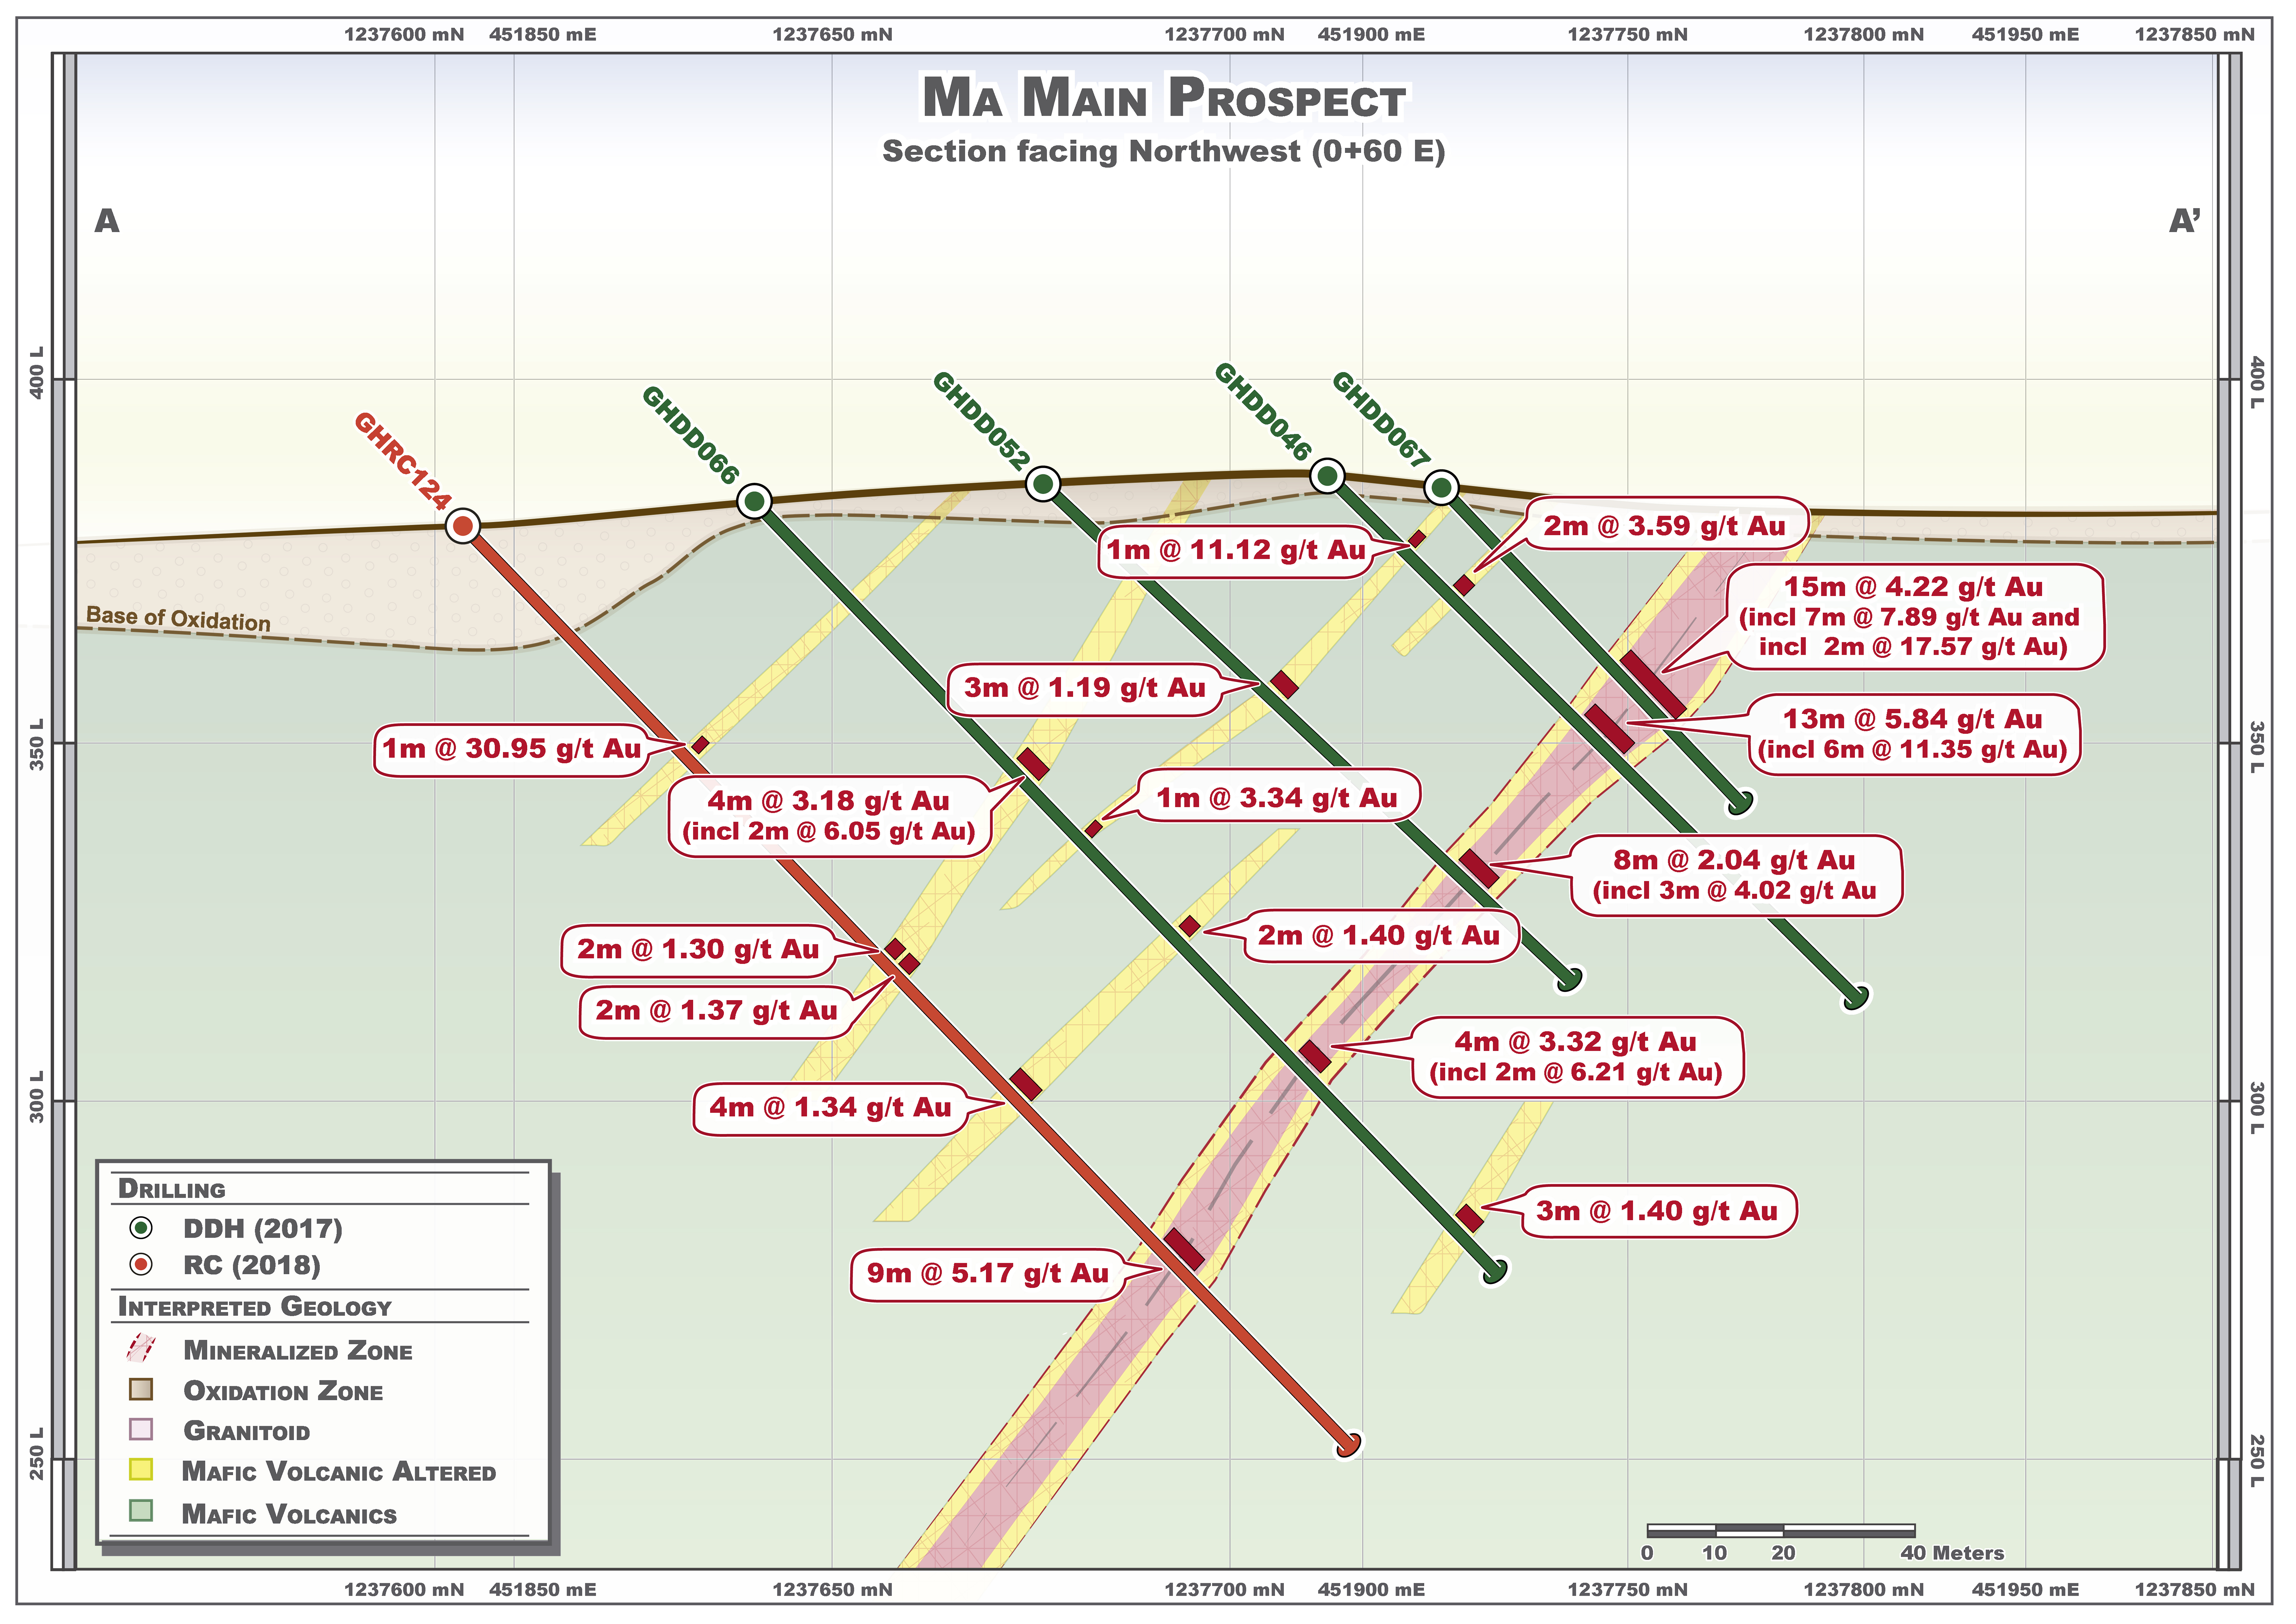 Fig 3 Ma Main Prospect - Representative Drill Section (A-A’ 0+60 E)